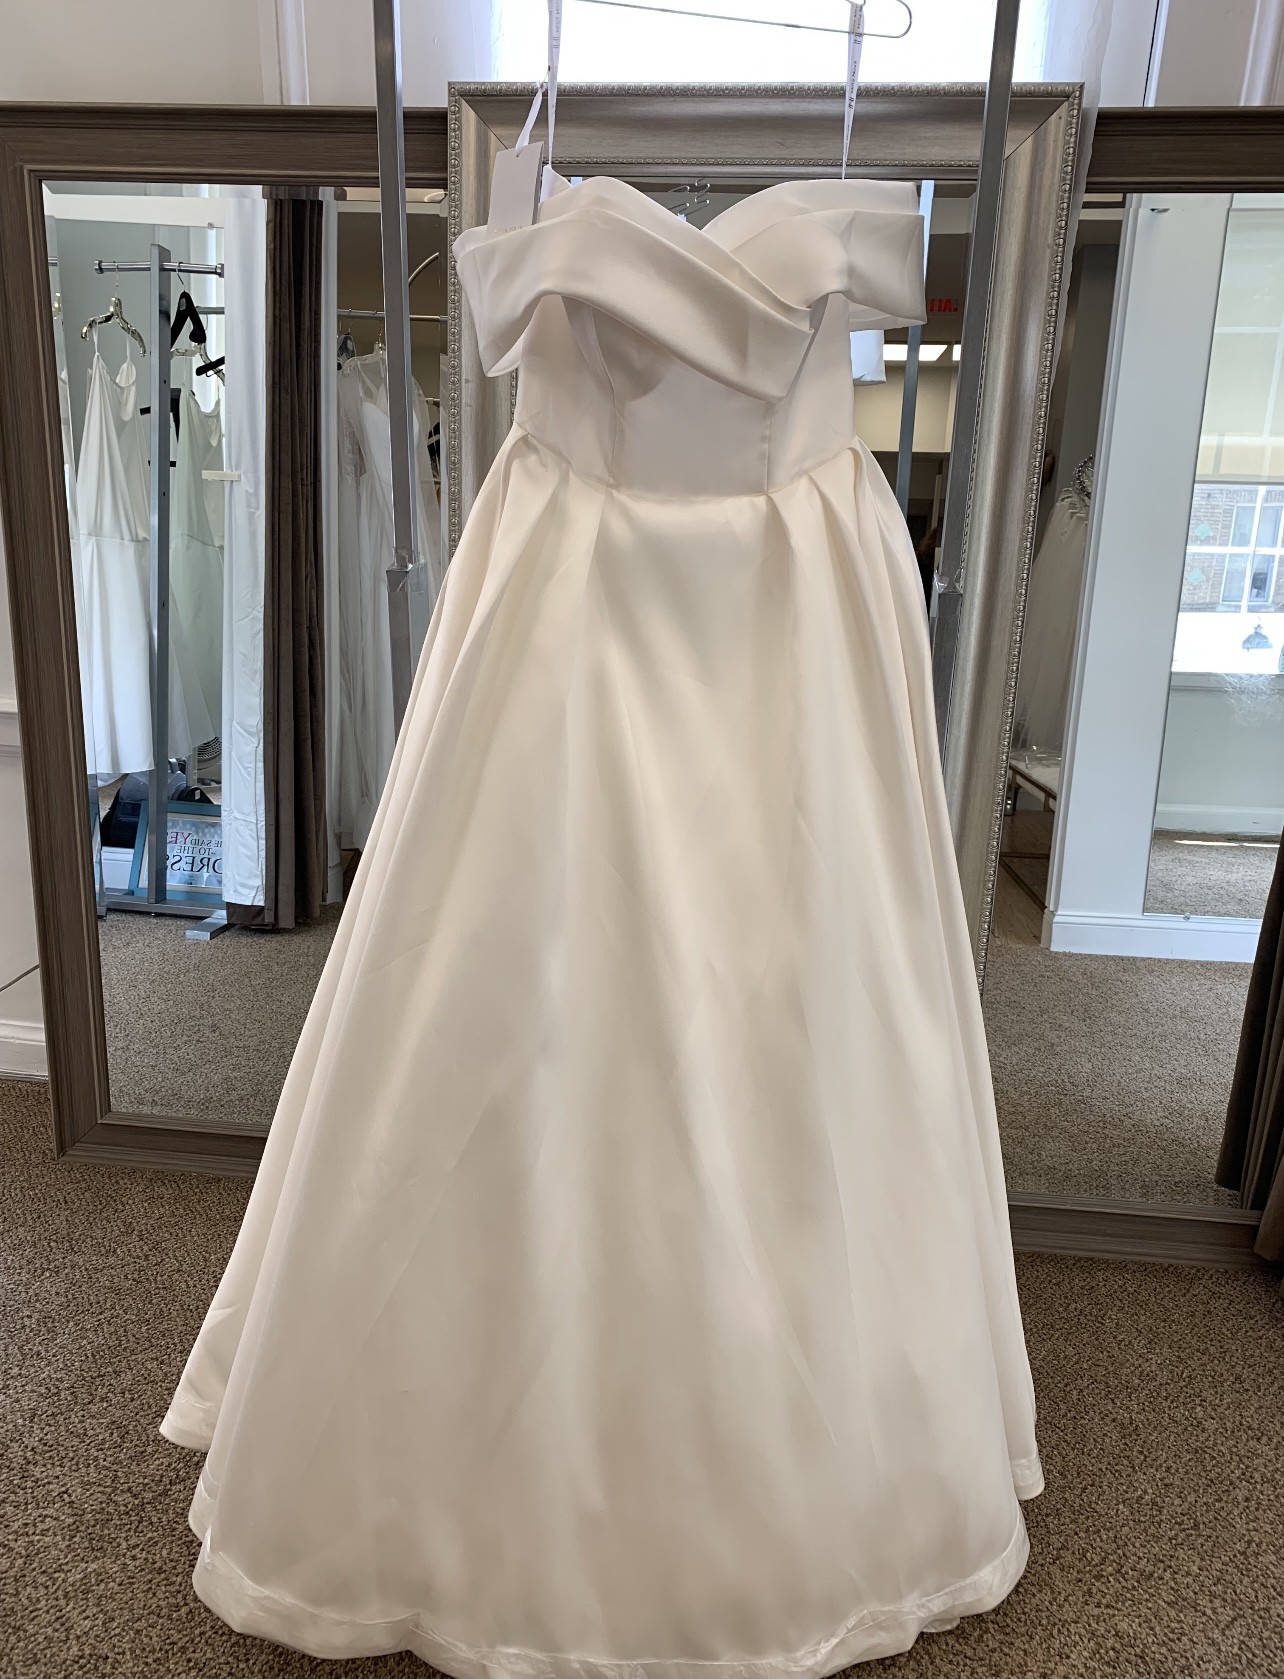 Milla Nova Matilda New Wedding Dress Save 26% - Stillwhite